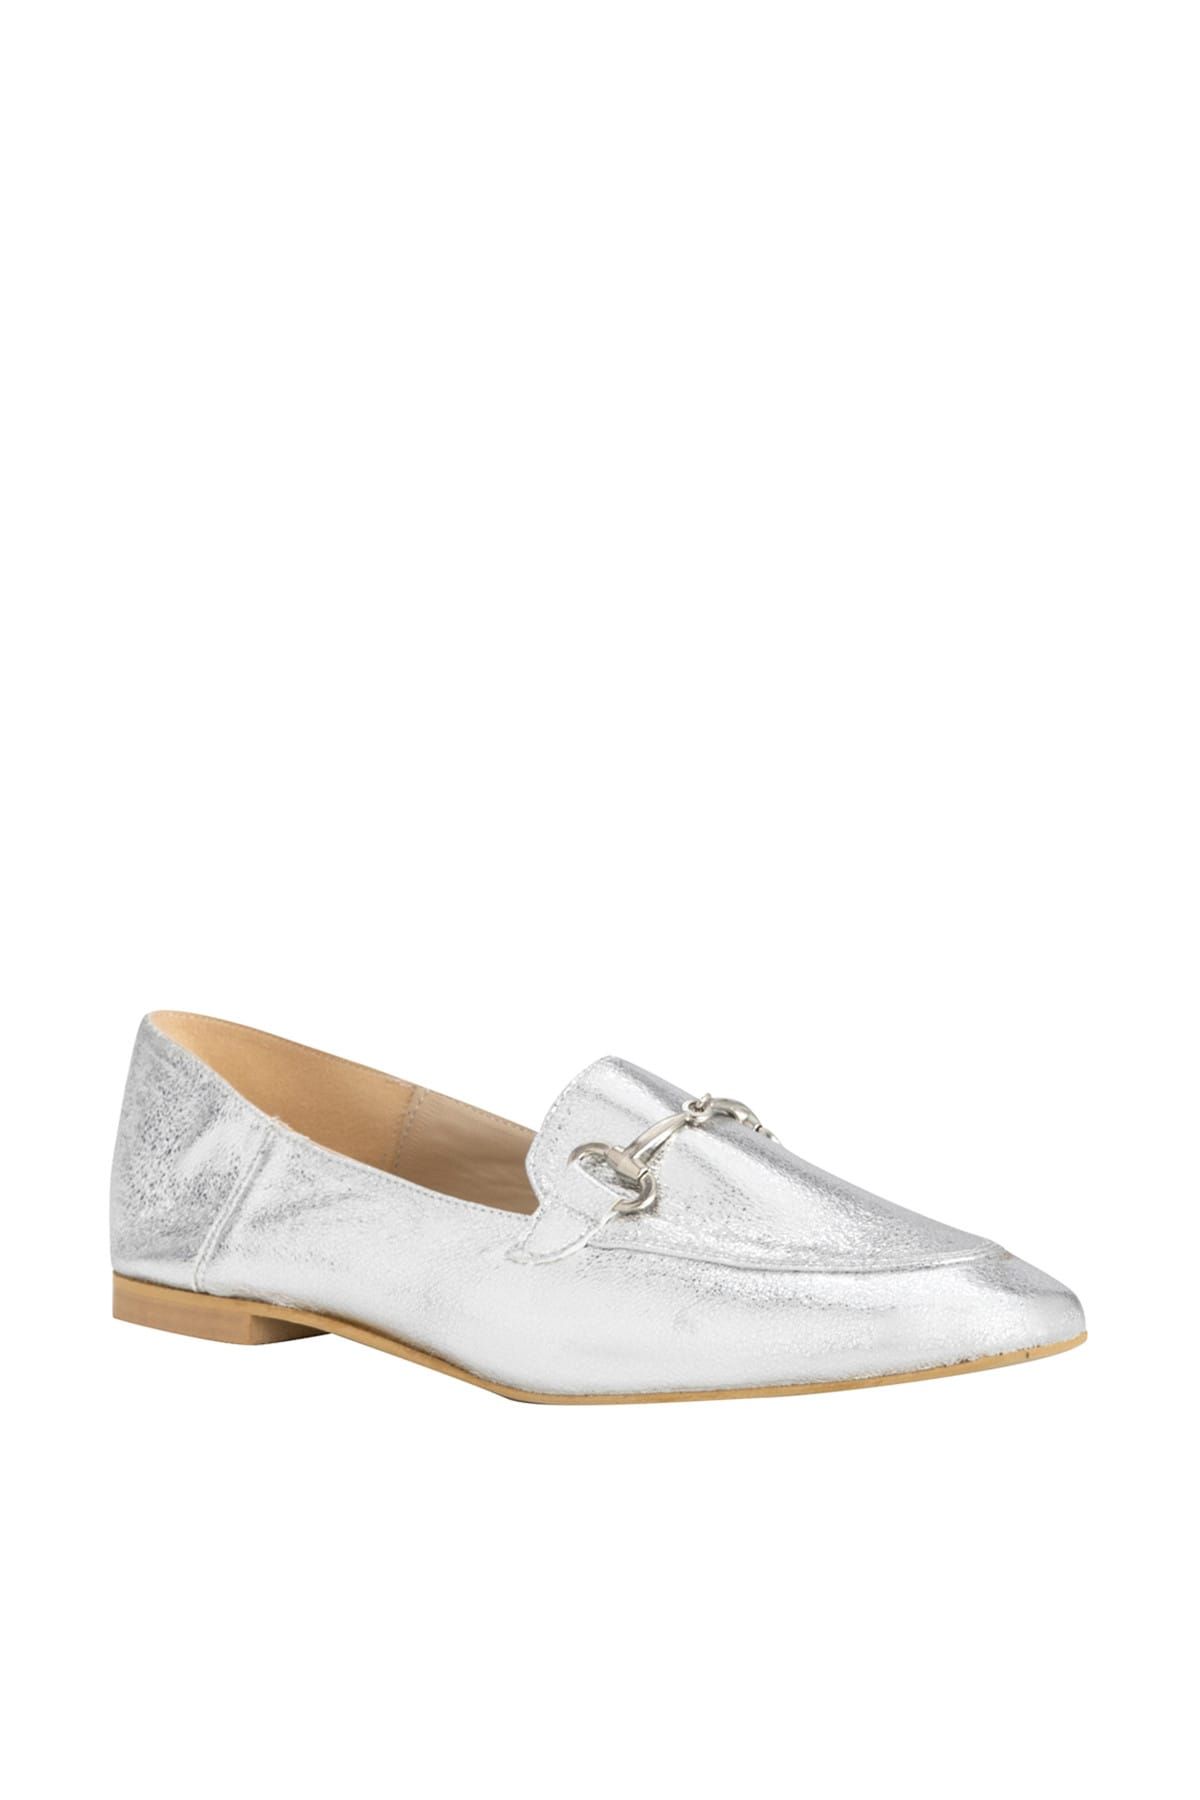 Mudo Kadın Gümüş Rengi Tokalı Loafer Ayakkabı 1193624